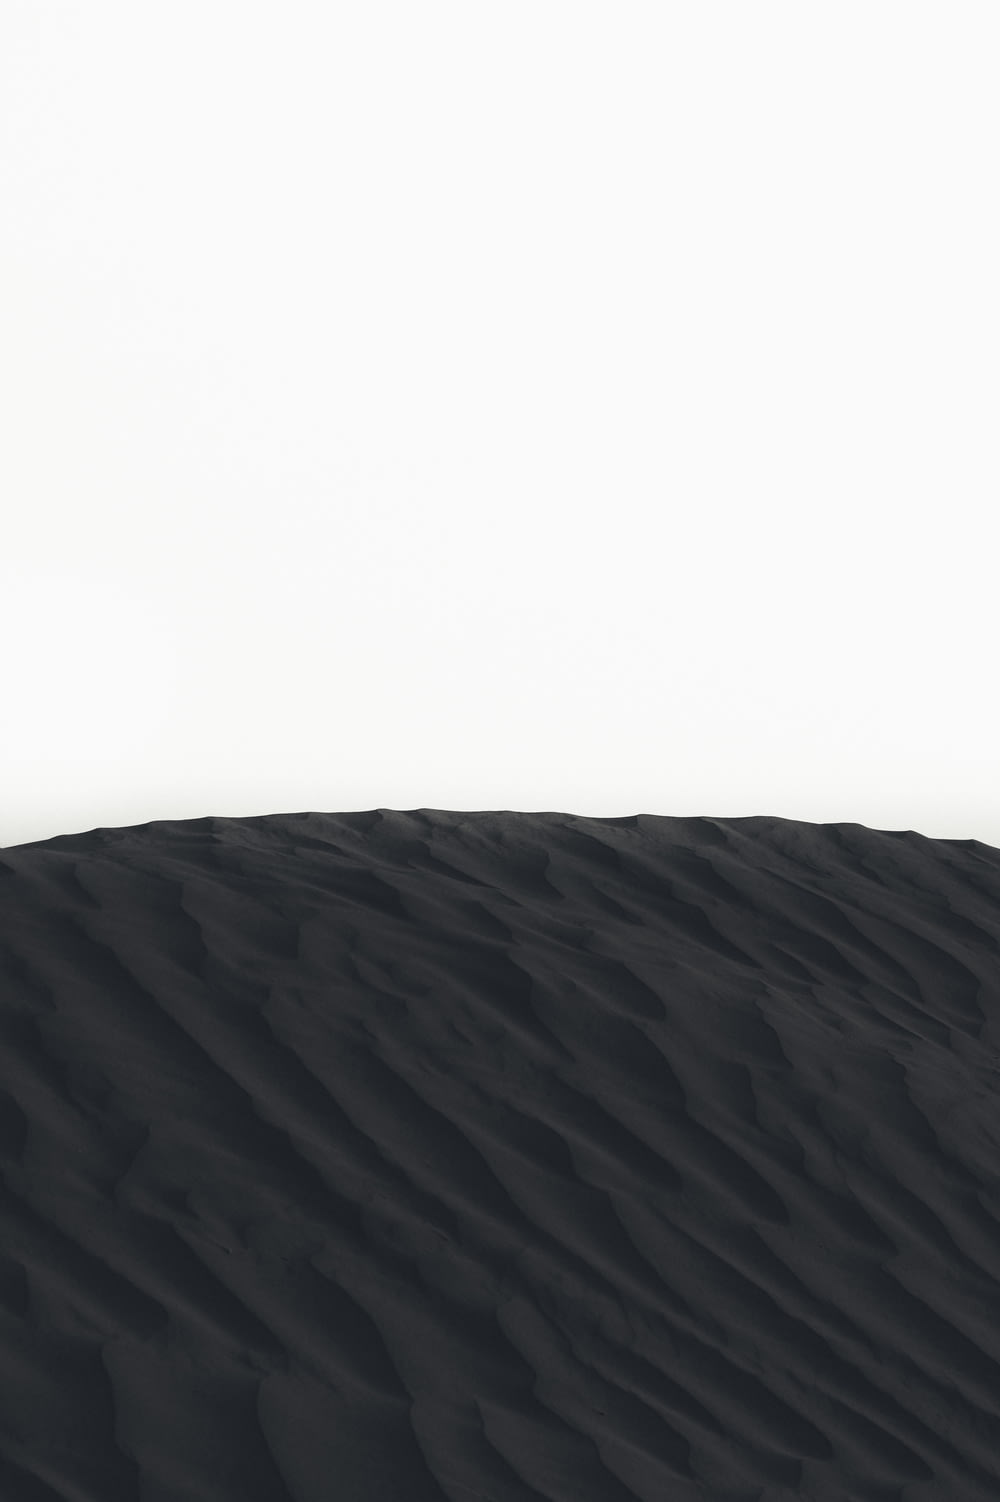 砂丘の風景写真